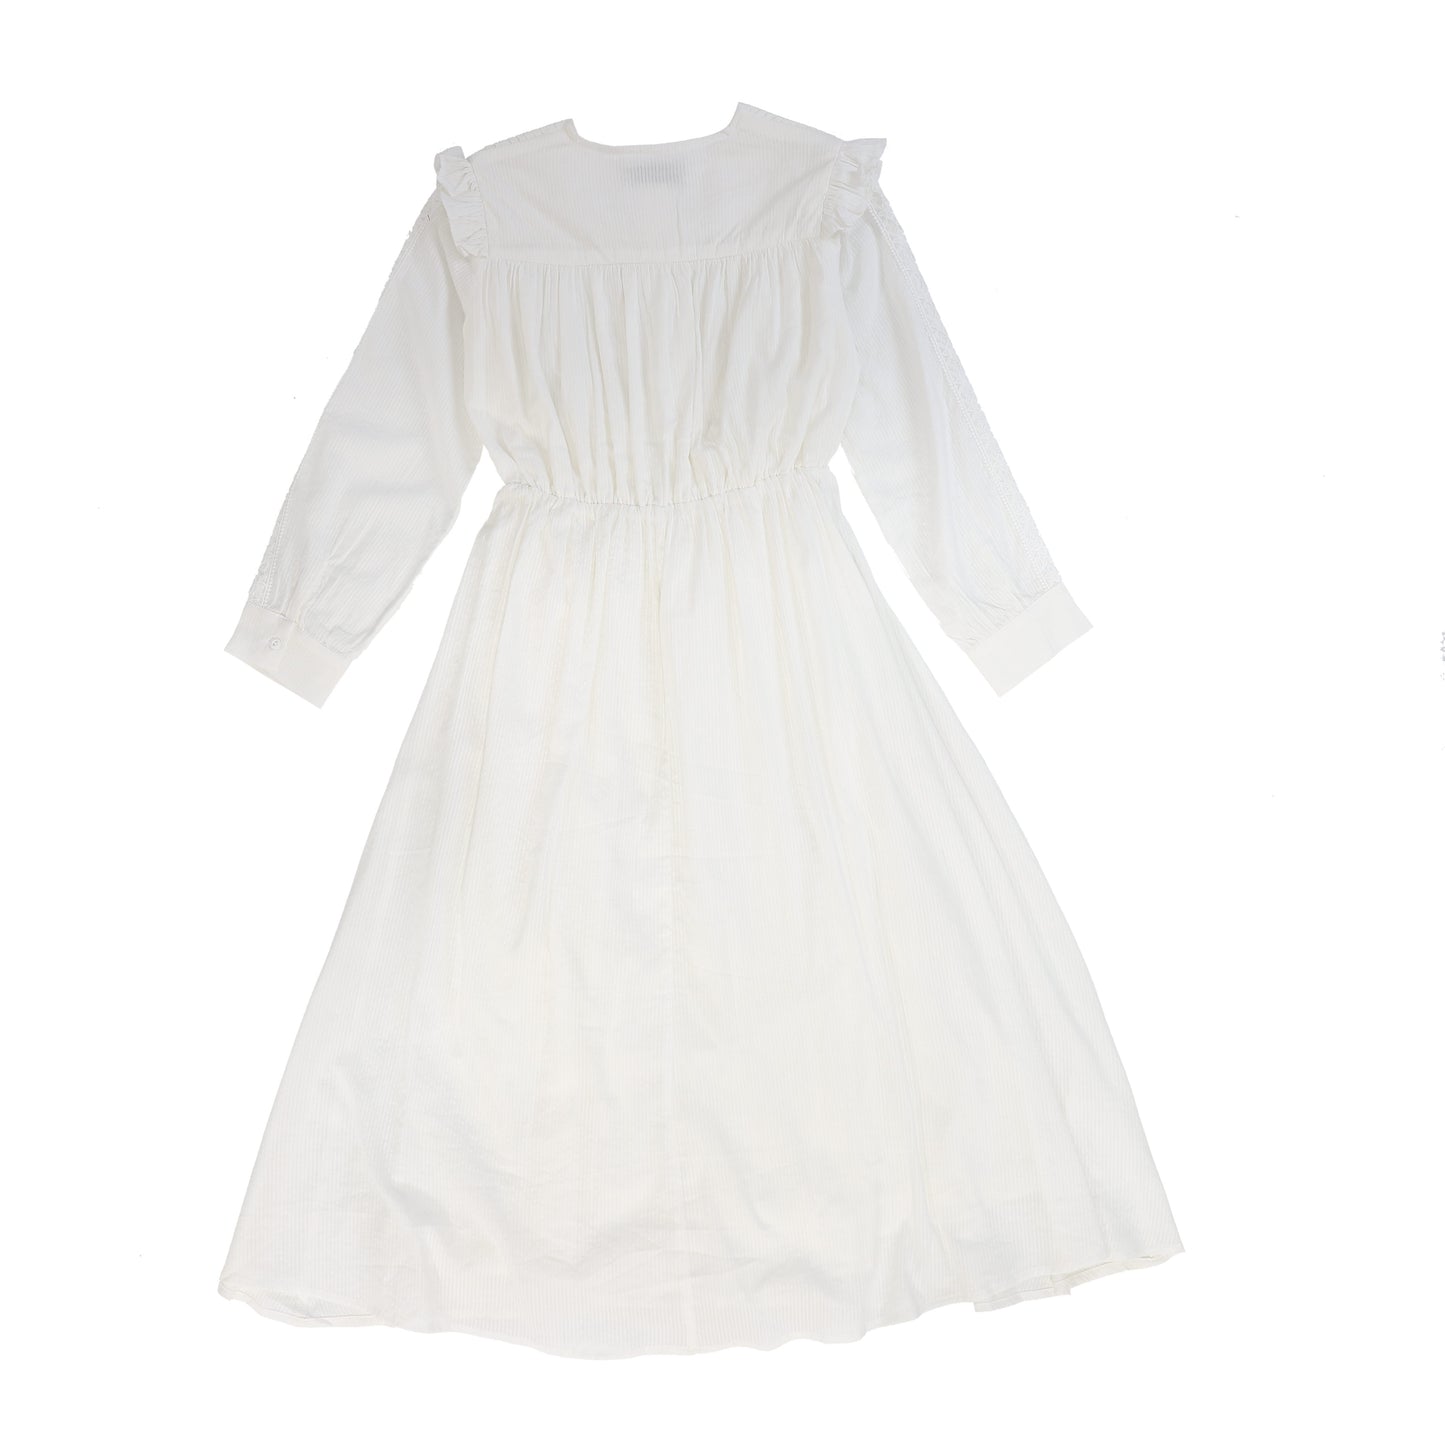 MINIMAL WHITE SLEEVE LACE DETAILED DRESS